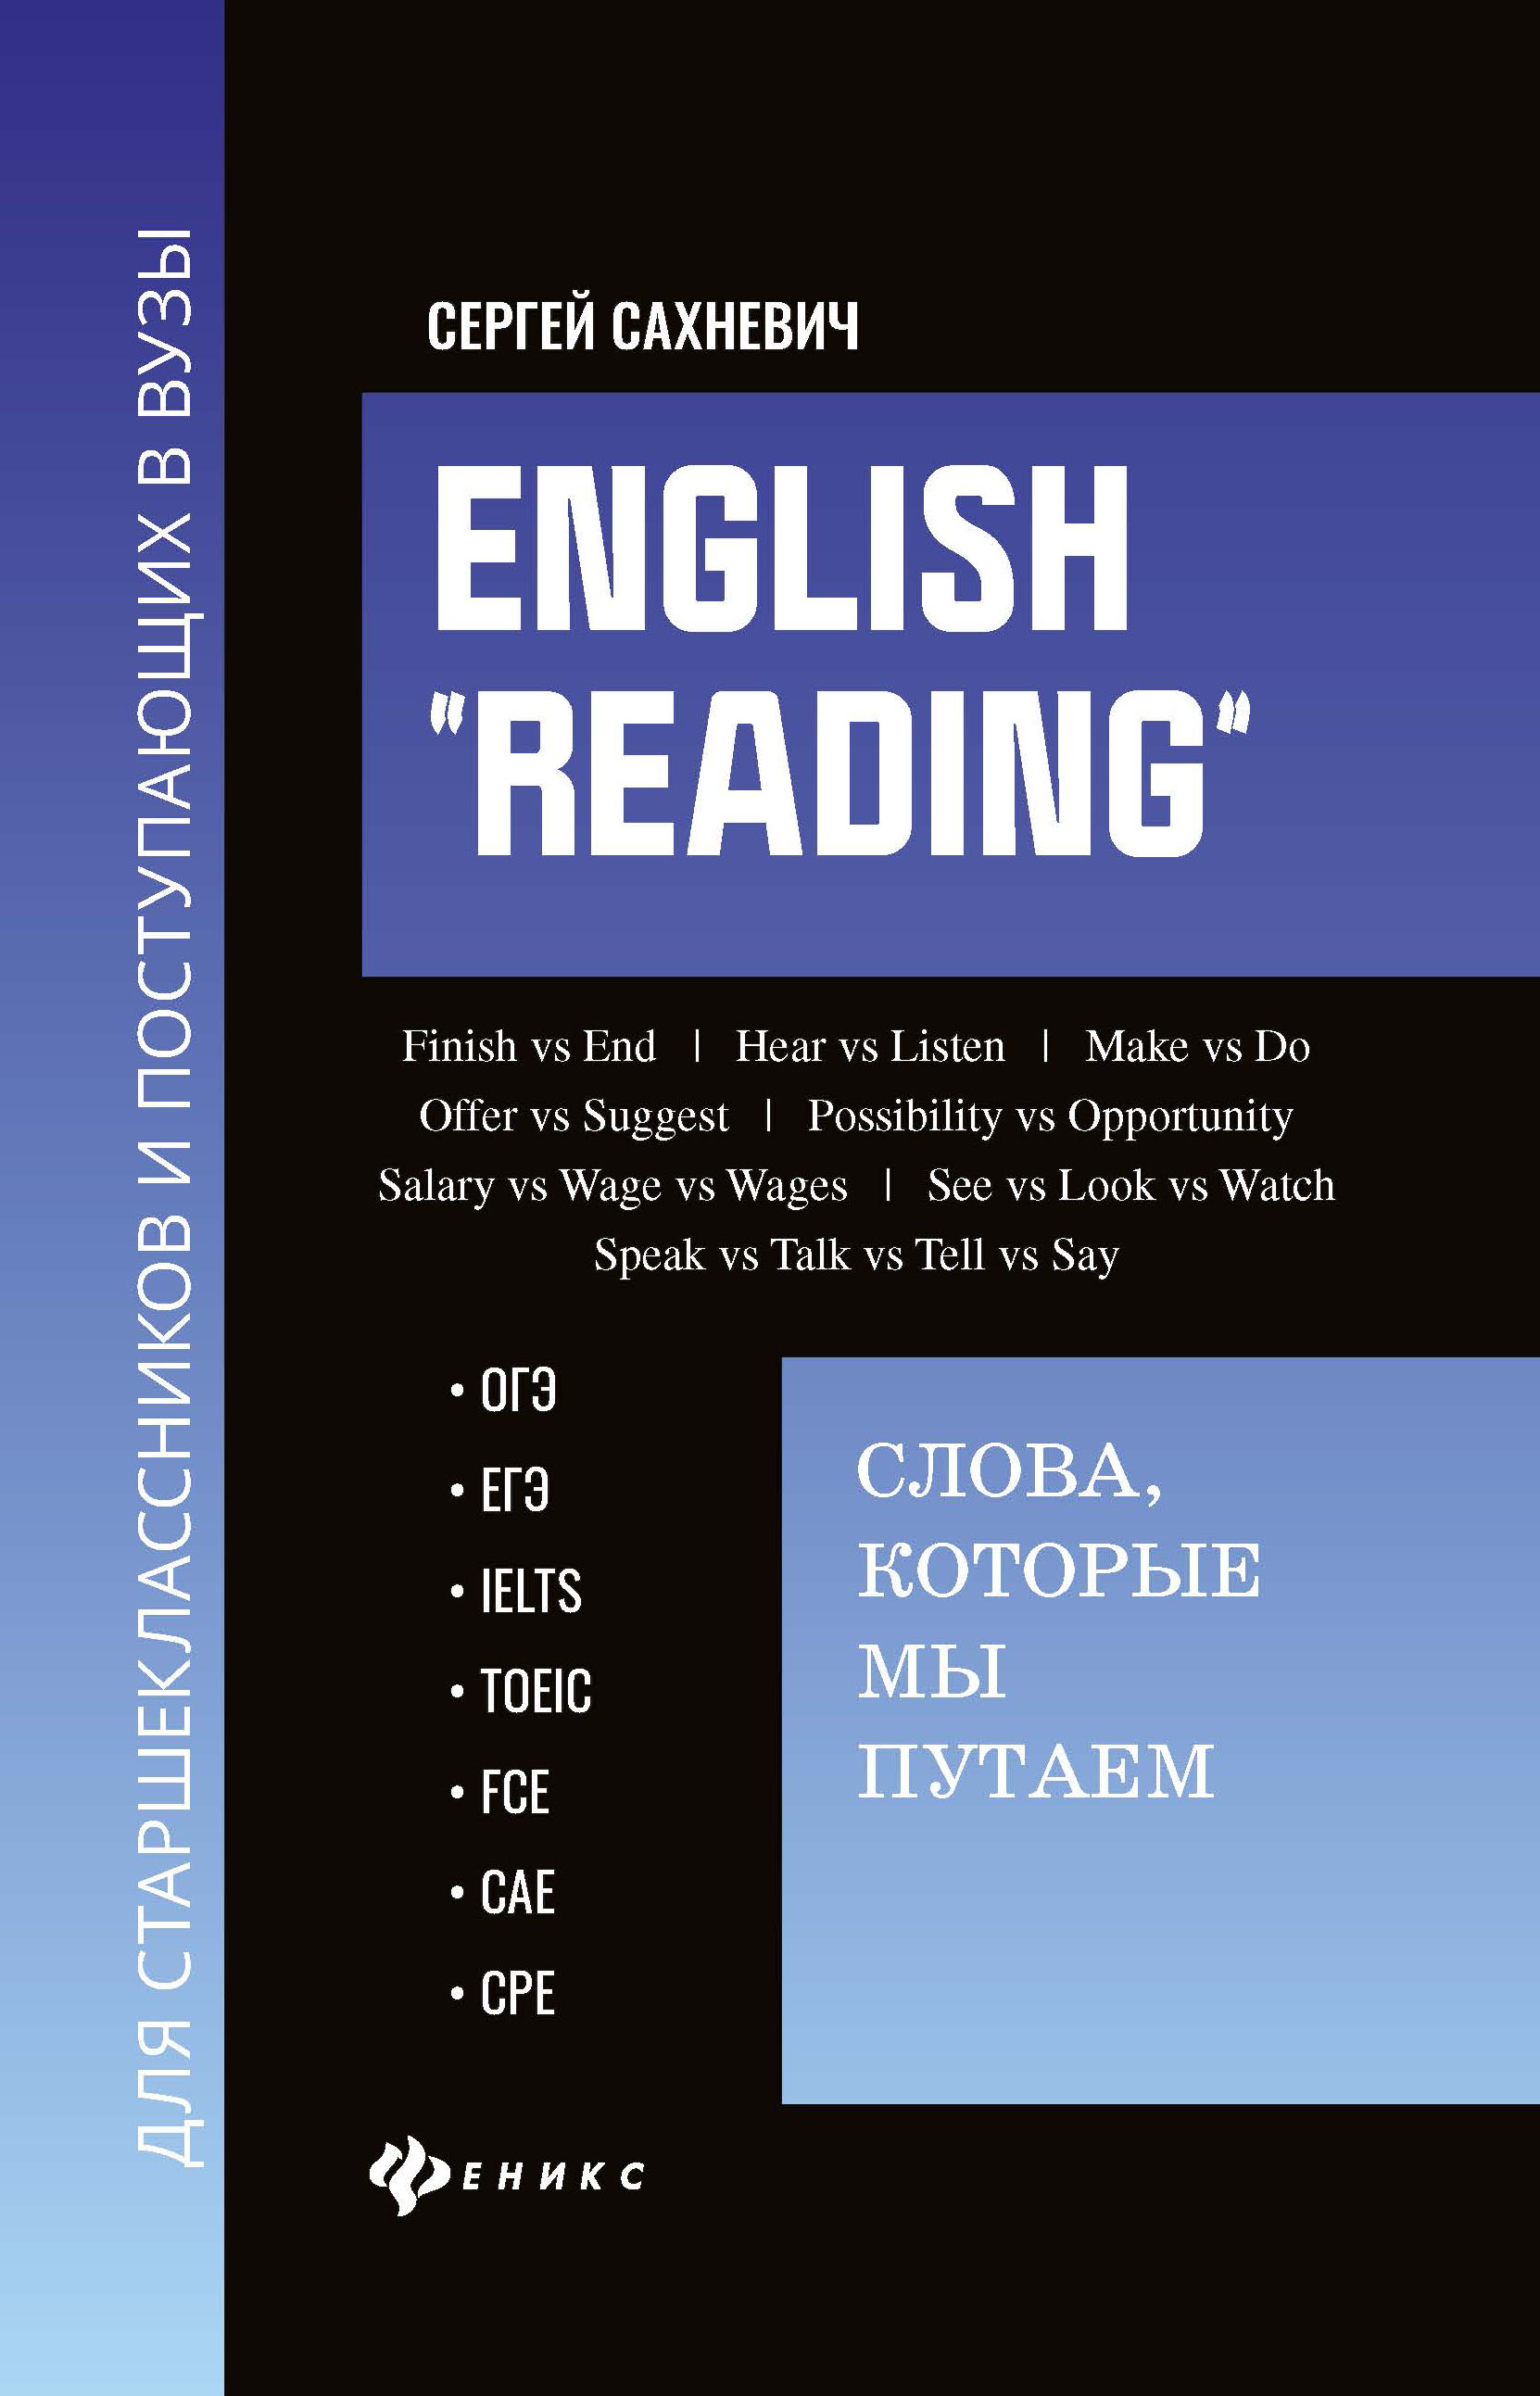 English "Reading": слова, которые мы путаем: Для подготовкт к экзаменам, ОГЭ, ЕГЭ, IELTS, TOEIC, FCE, CAE, CPE